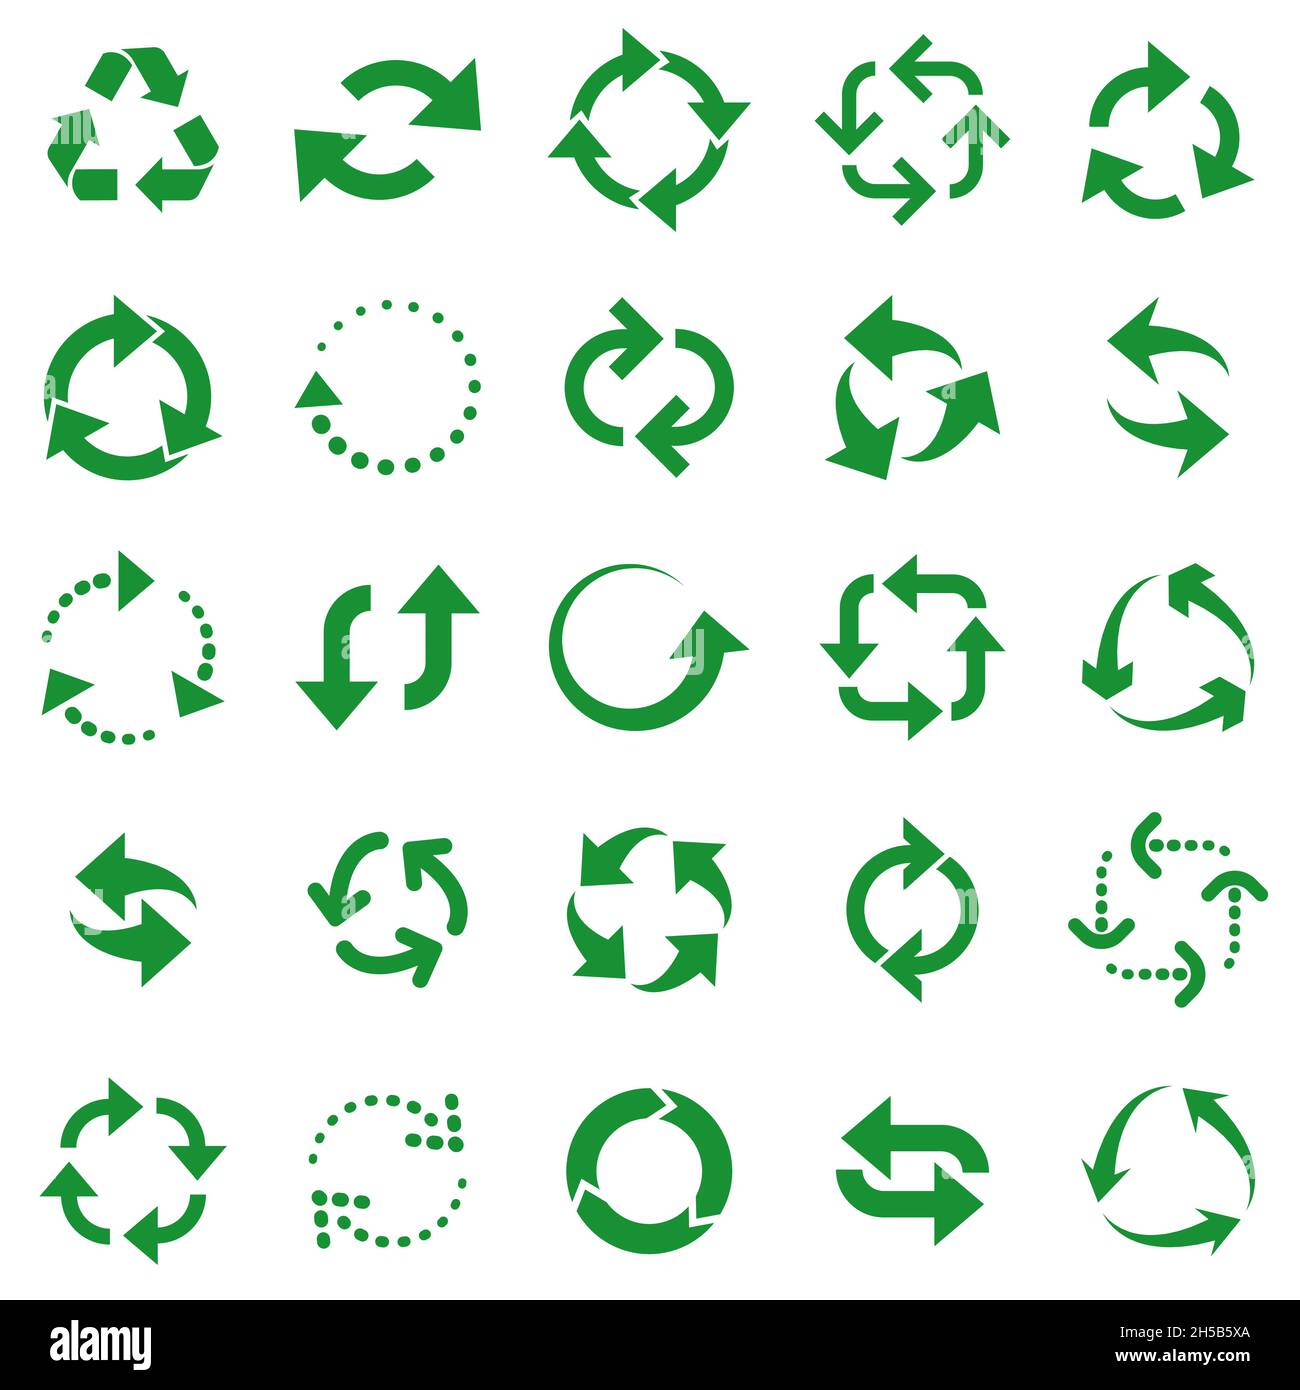 Flèches réutilisables.Flèche verte de recyclage, cycle de vie du recyclage.Logo des matières organiques, bio-écologie ou symboles biodégradables Collection récente de vecteurs Illustration de Vecteur